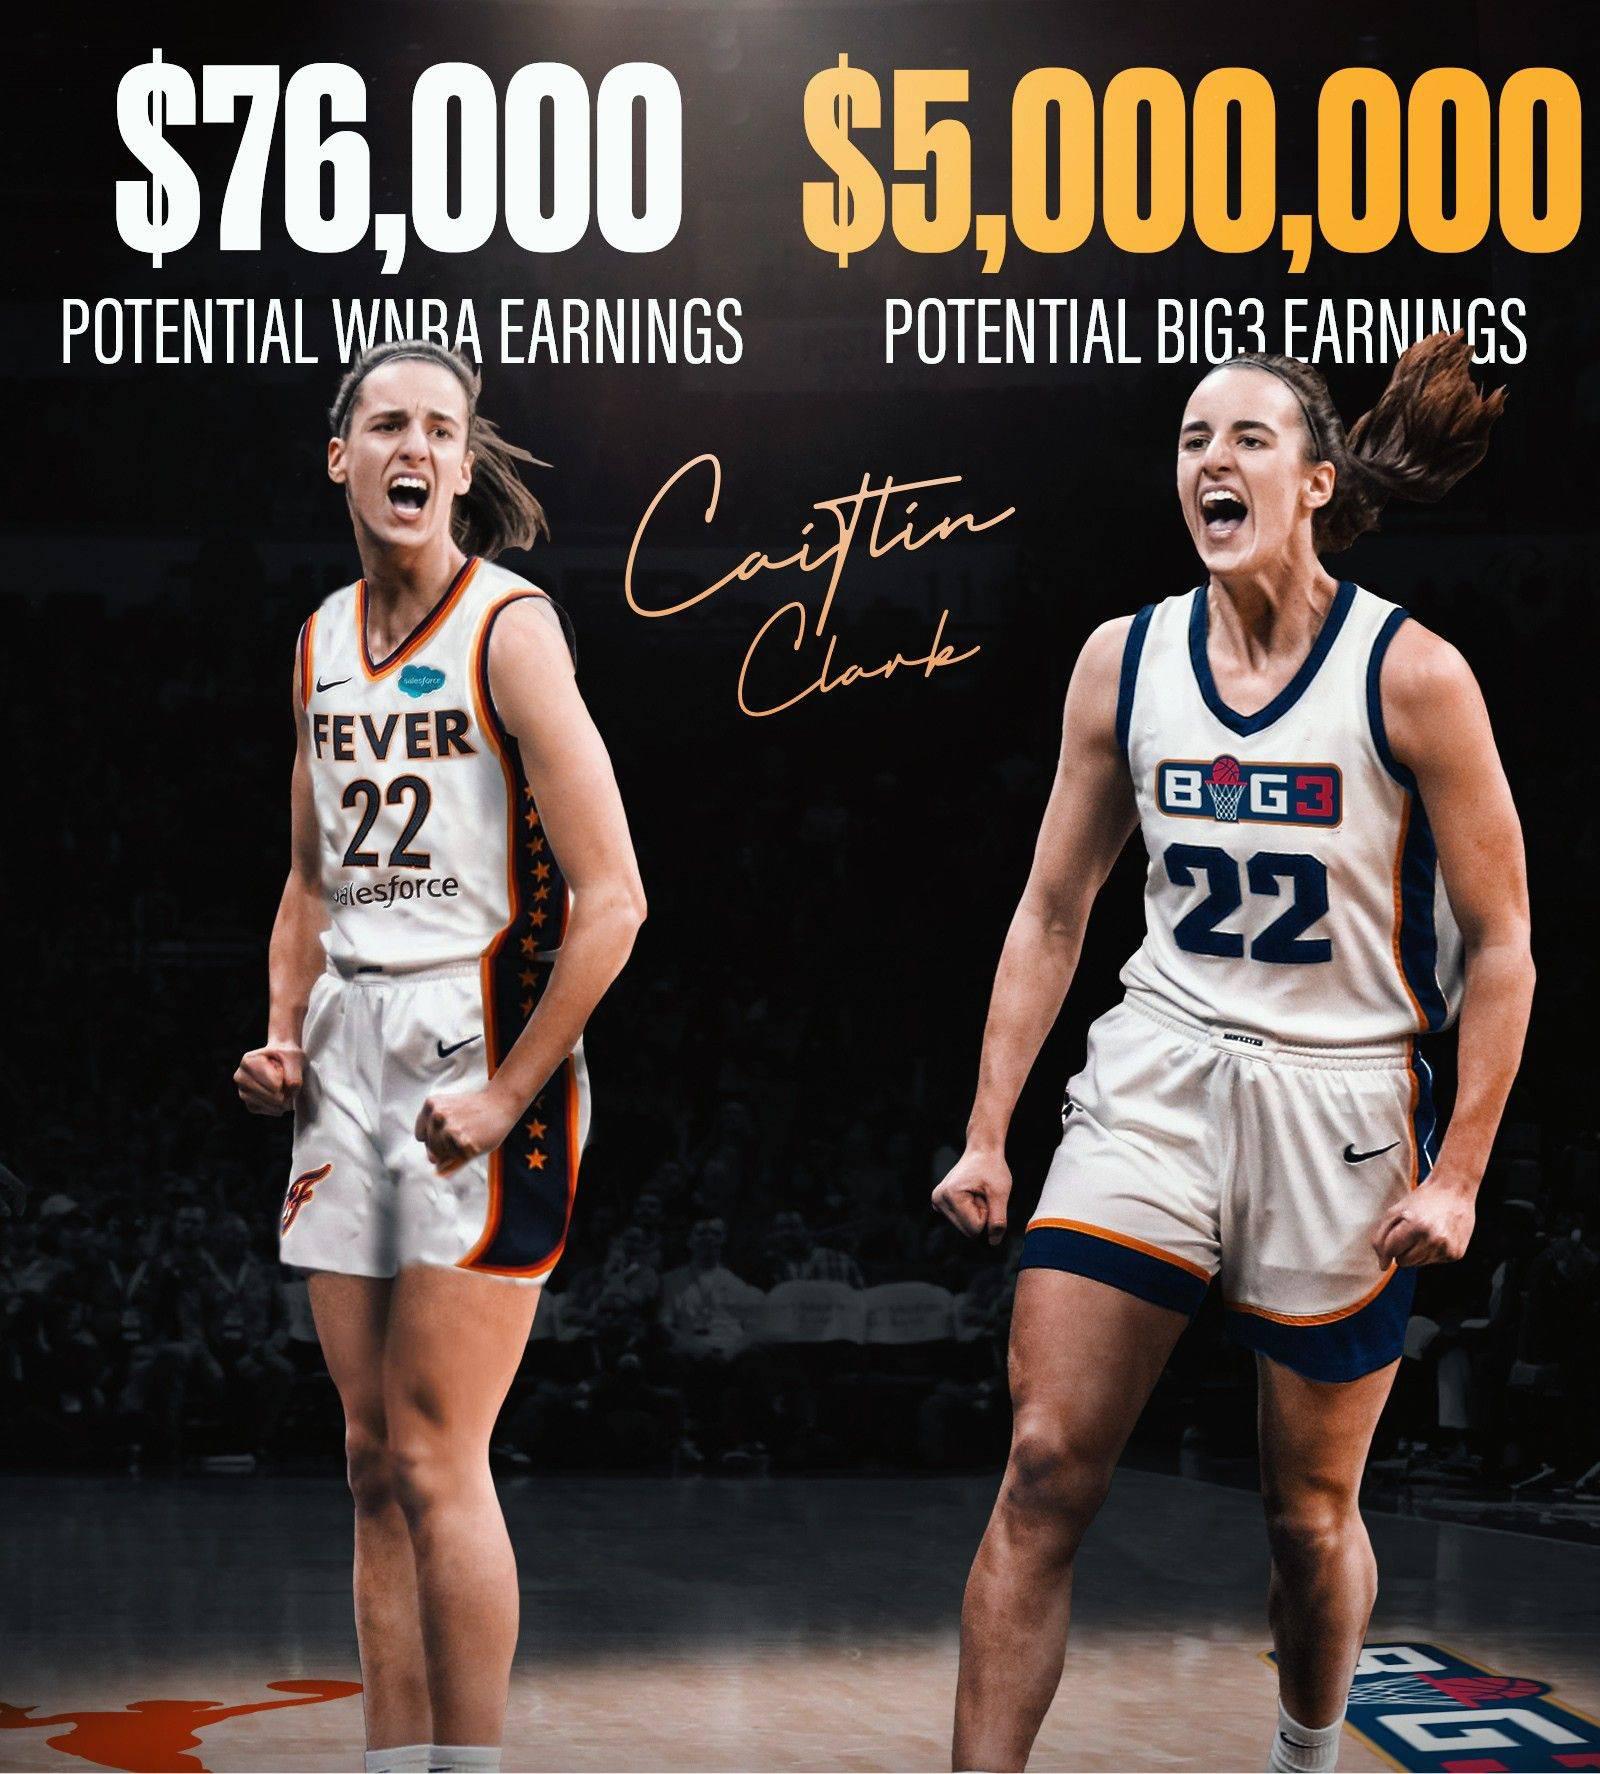 女库里克拉克报价500万美元 加盟BIG3联赛 只打8场常规赛并可继续征战WNBA